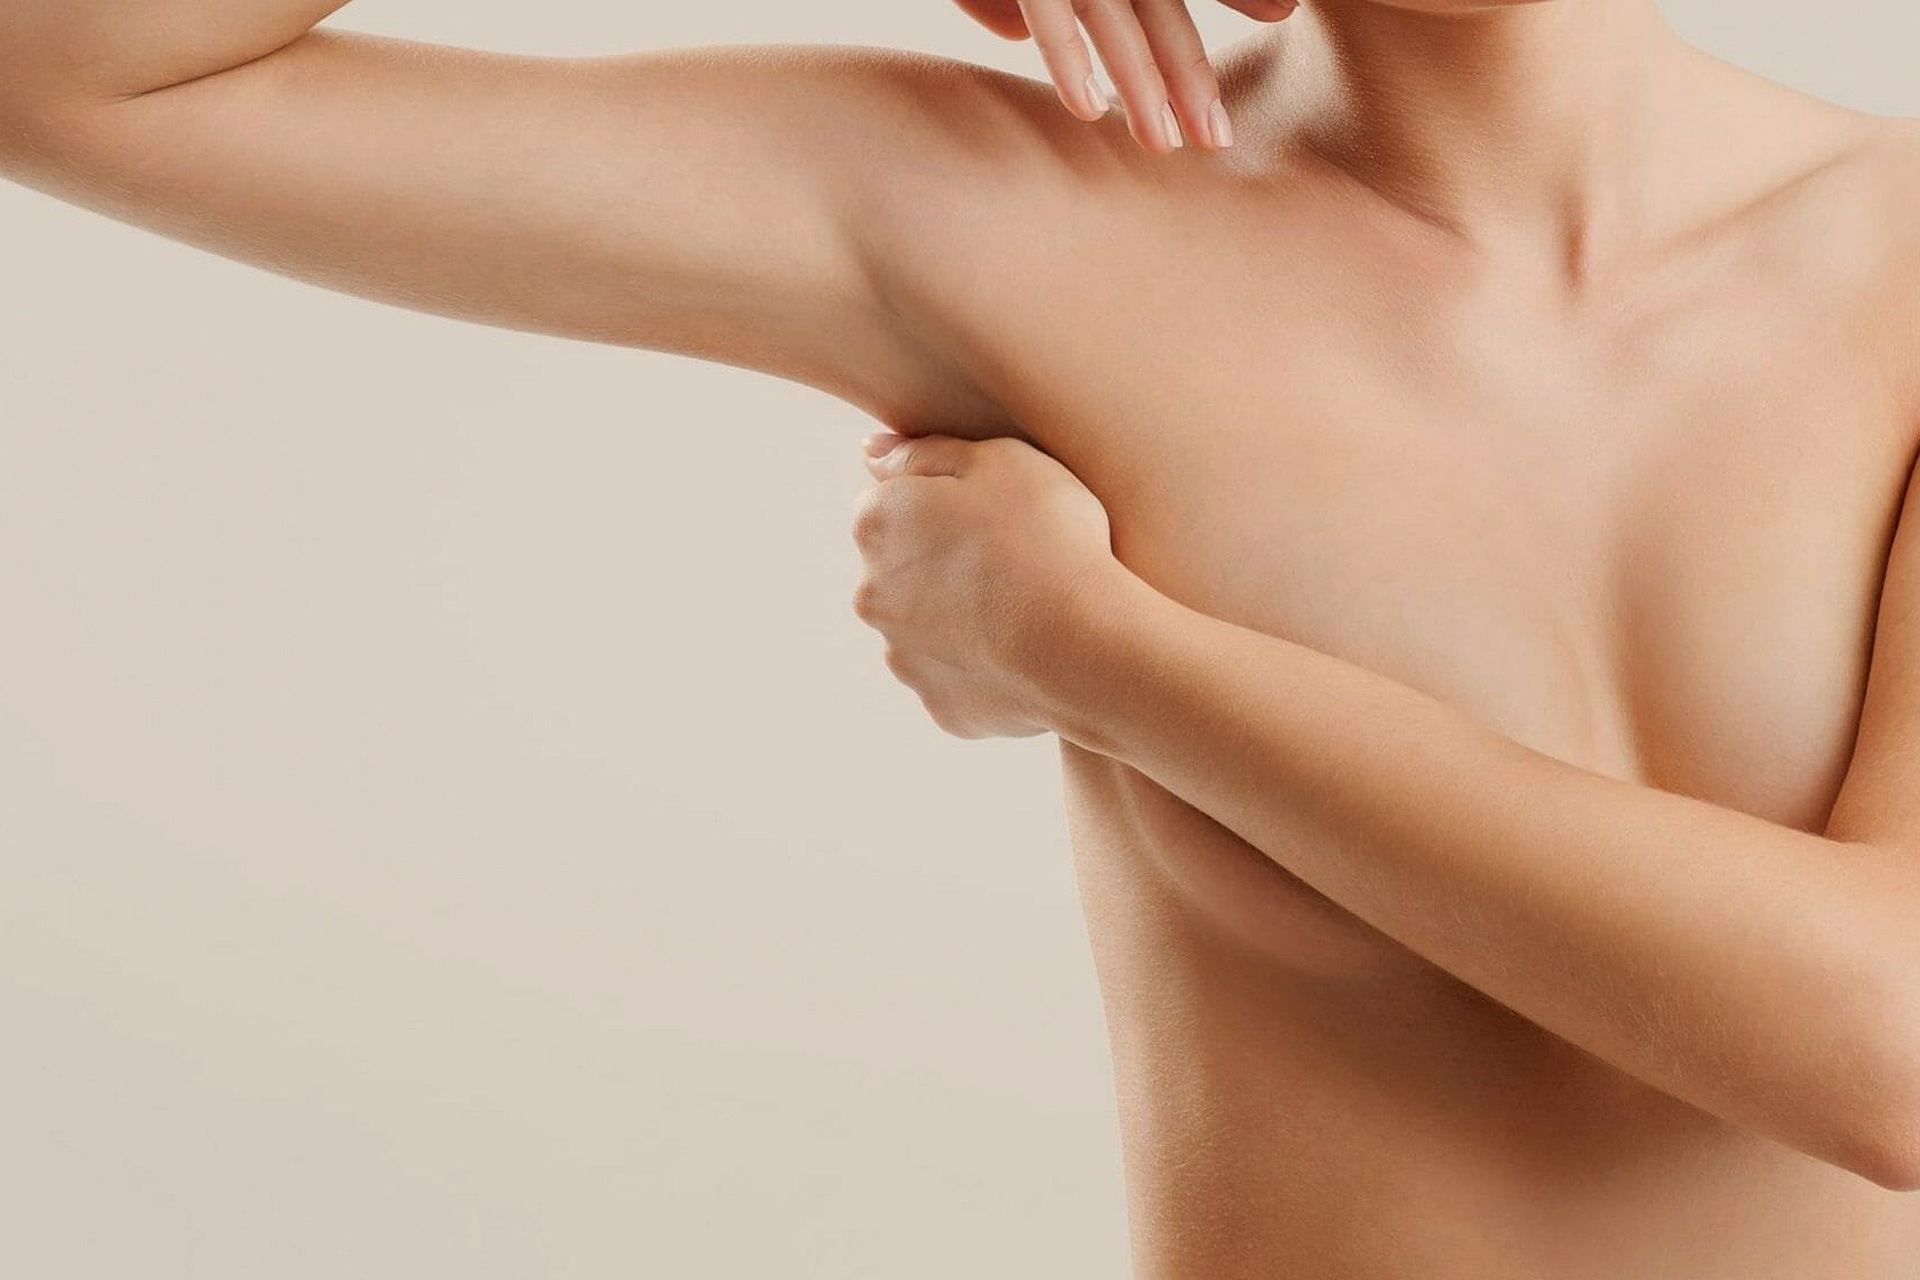 Der Hautüberschuss an den Oberarmen stört meist beim Tragen kurzärmeliger Oberteile. Bei der Oberarmstraffung wird in der Operation meist eine Kombinationstherapie aus Liposuktion und Straffung durchgeführt.